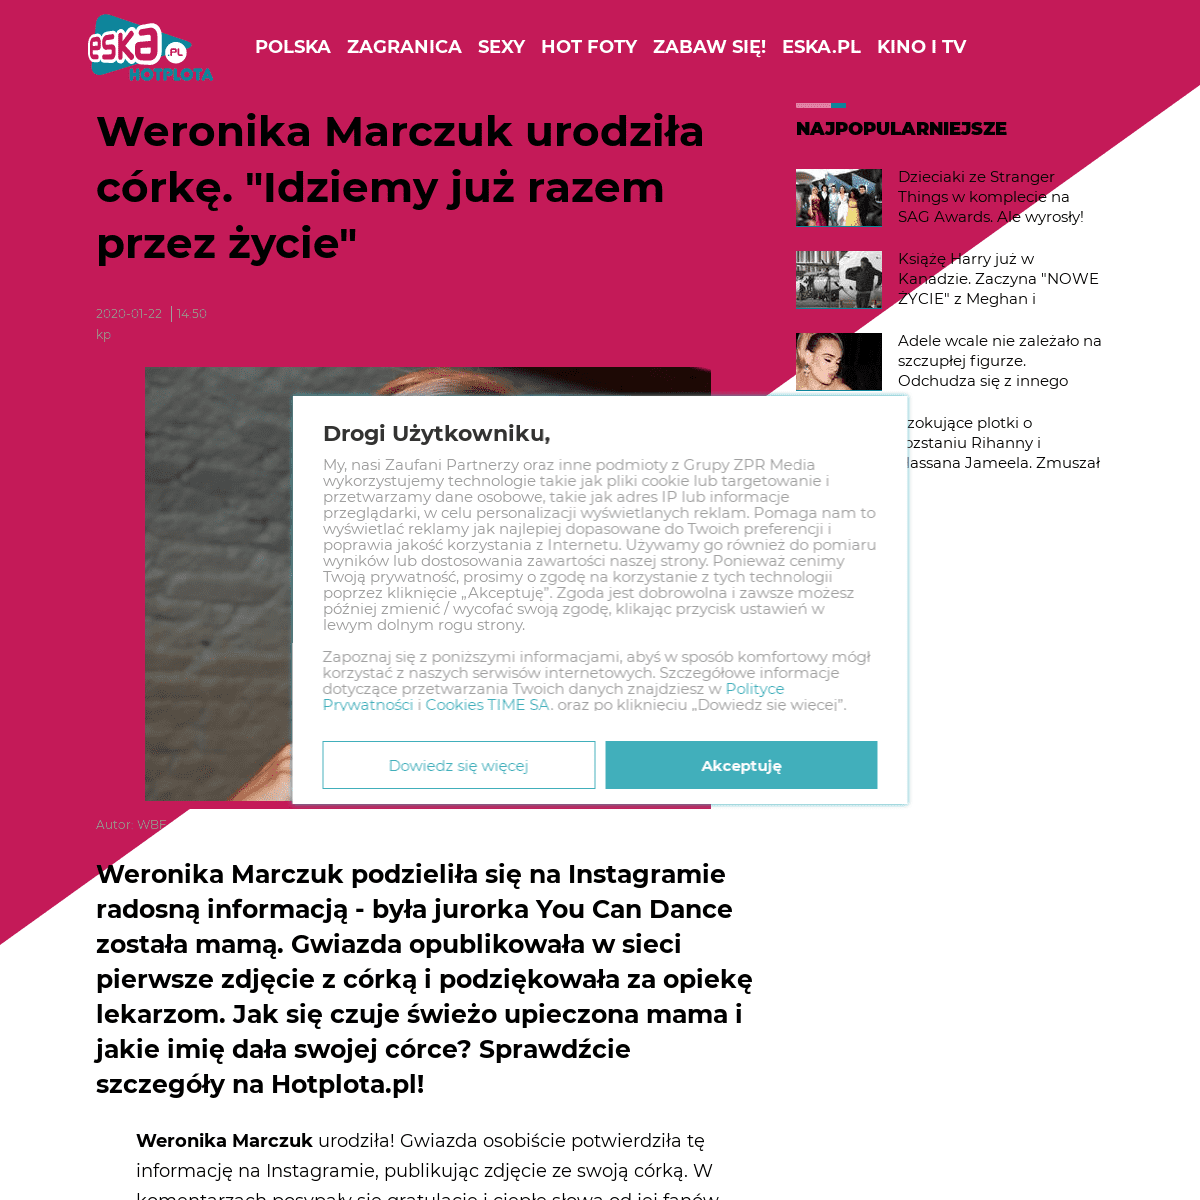 A complete backup of www.eska.pl/hotplota/news/weronika-marczuk-urodzila-idziemy-juz-razem-przez-zycie-aa-UCs4-7doP-RJJ8.html